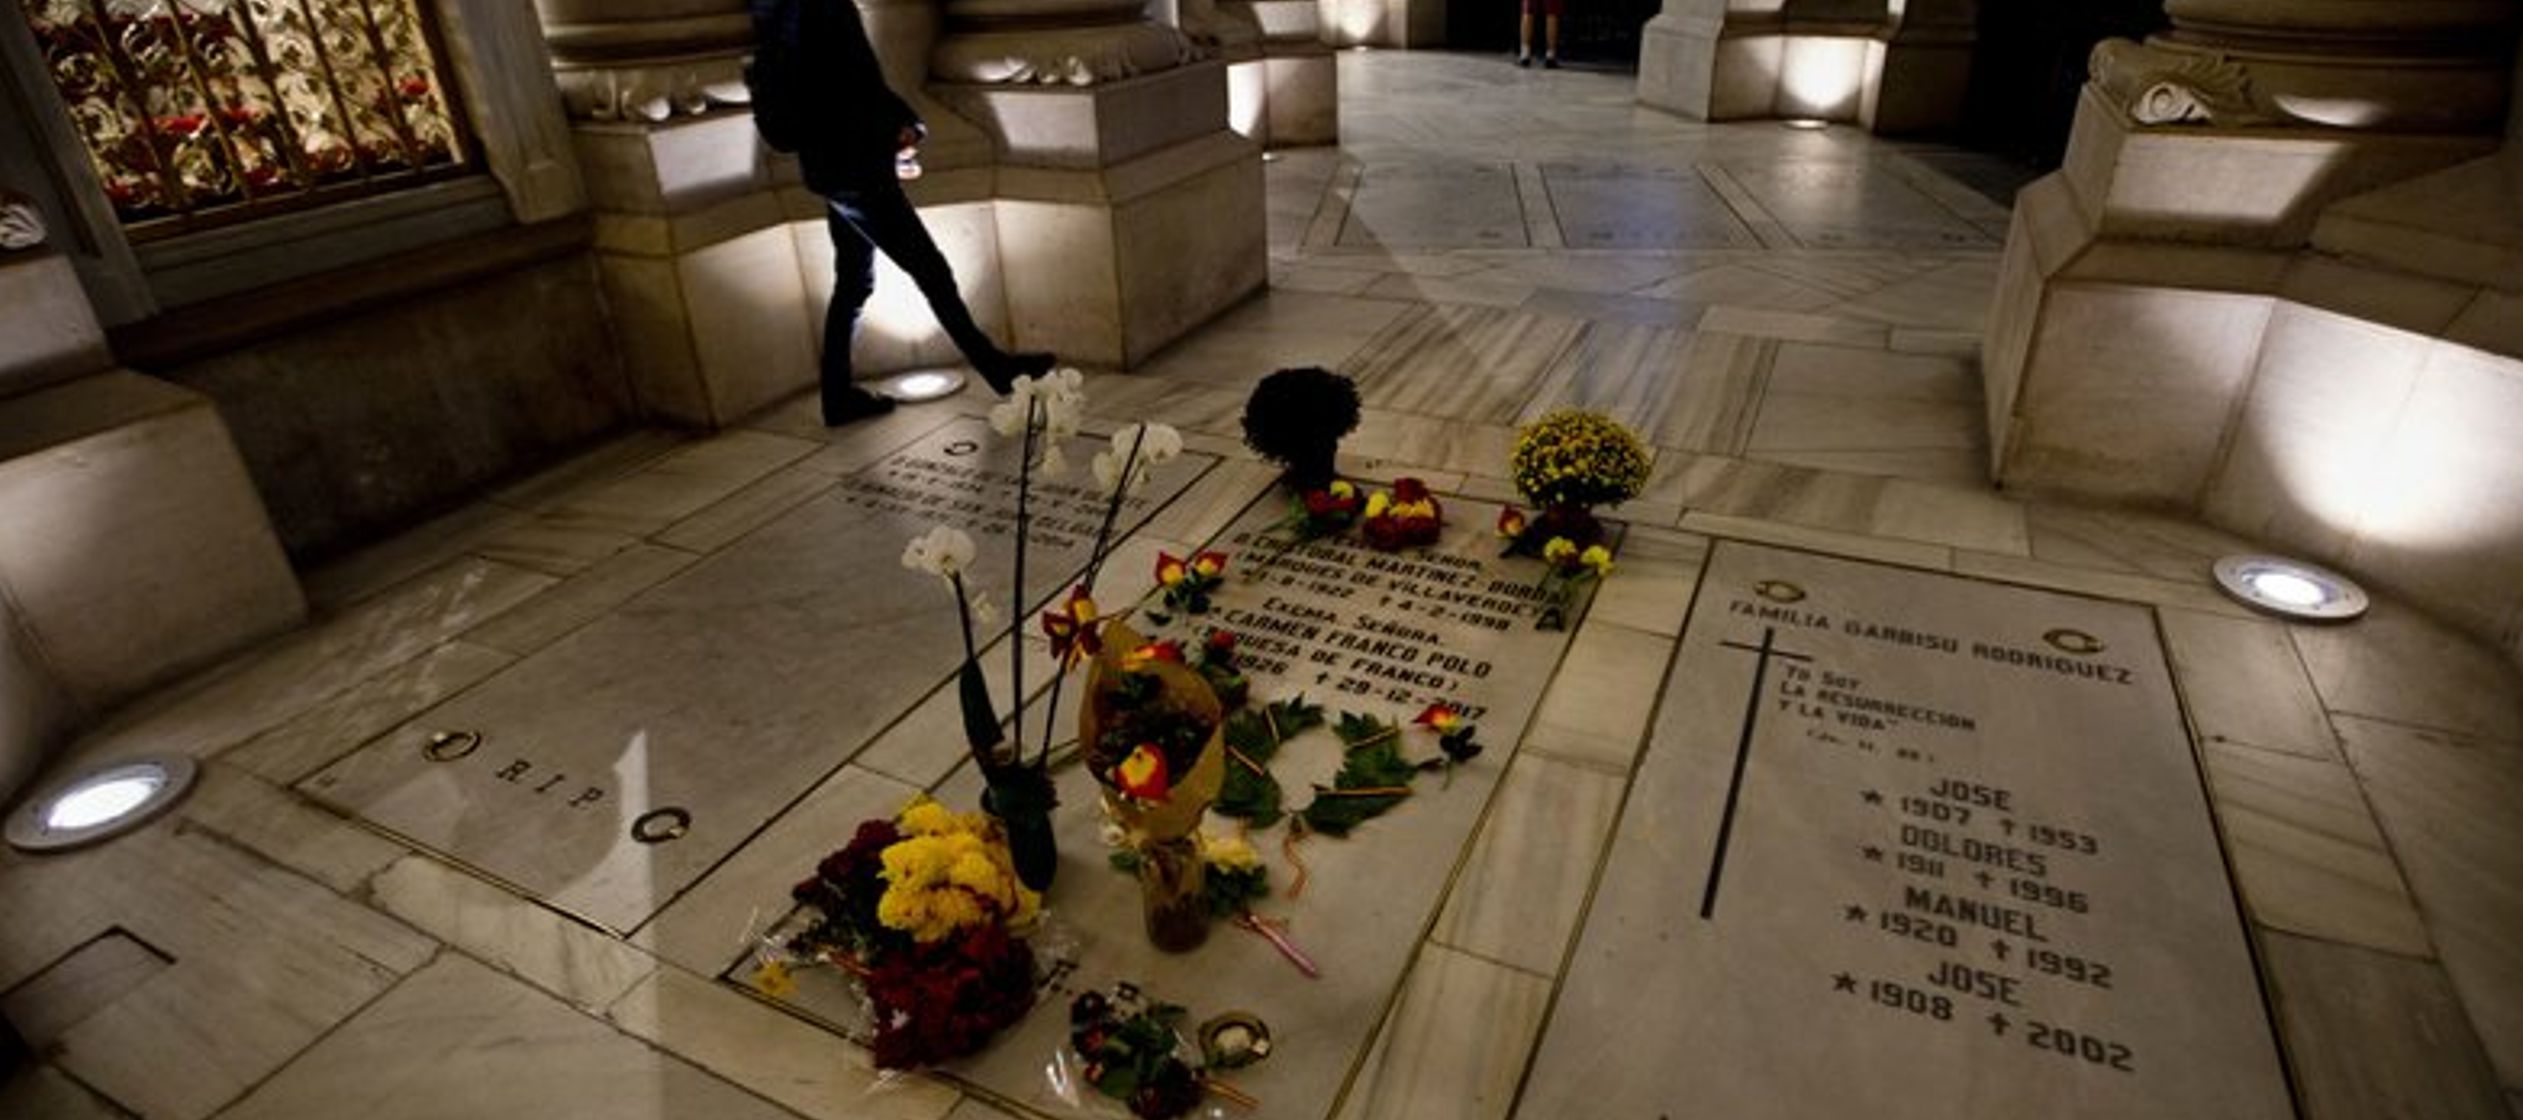 Los opositores temen que sepultar los restos de Franco allí convertiría al lugar en...